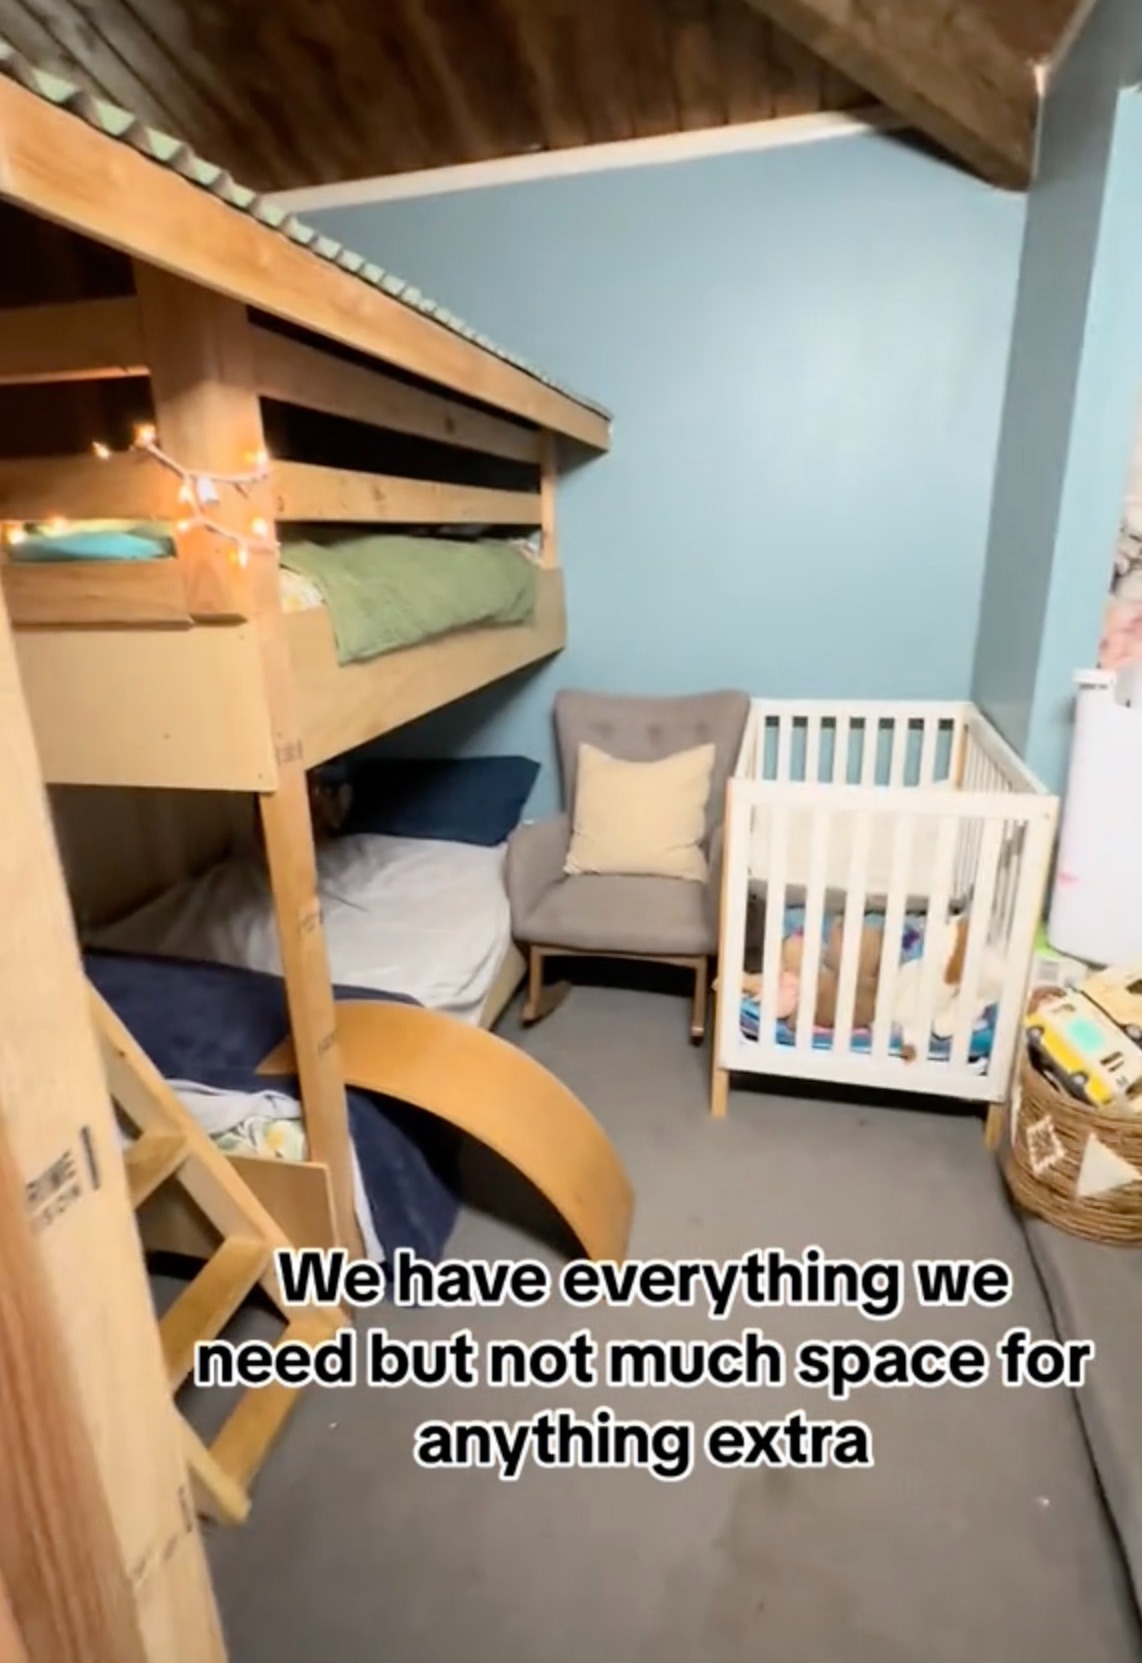 Juli und ihr Mann haben das Etagenbett ihrer Kinder so entworfen, dass sie nicht versehentlich aus der obersten Etage fallen können